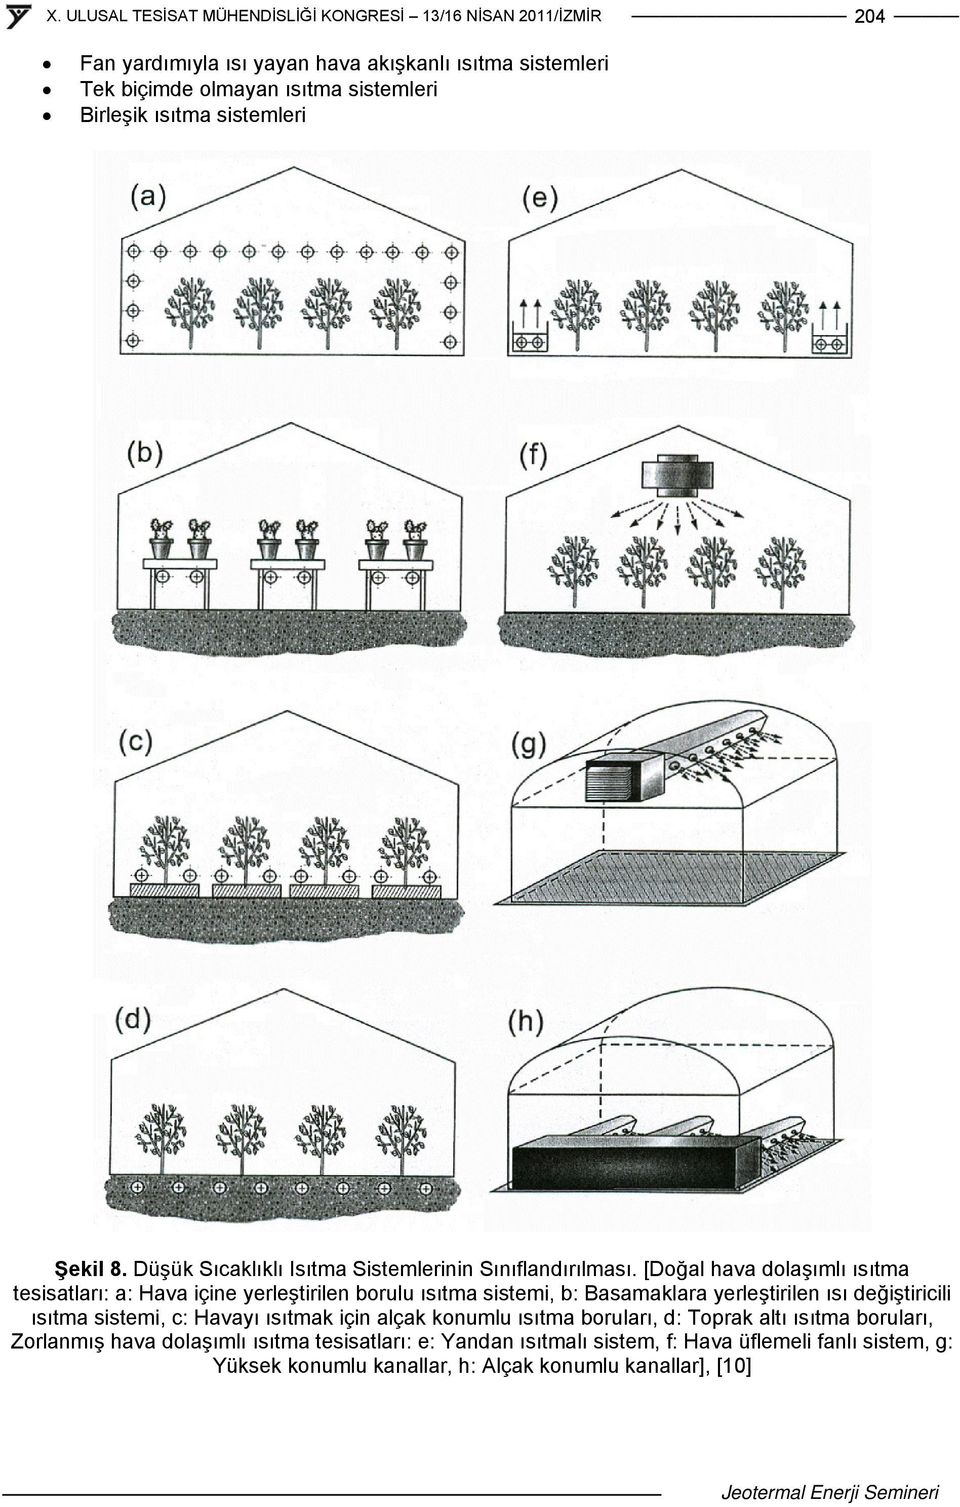 [Doğal hava dolaşımlı ısıtma tesisatları: a: Hava içine yerleştirilen borulu ısıtma sistemi, b: Basamaklara yerleştirilen ısı değiştiricili ısıtma